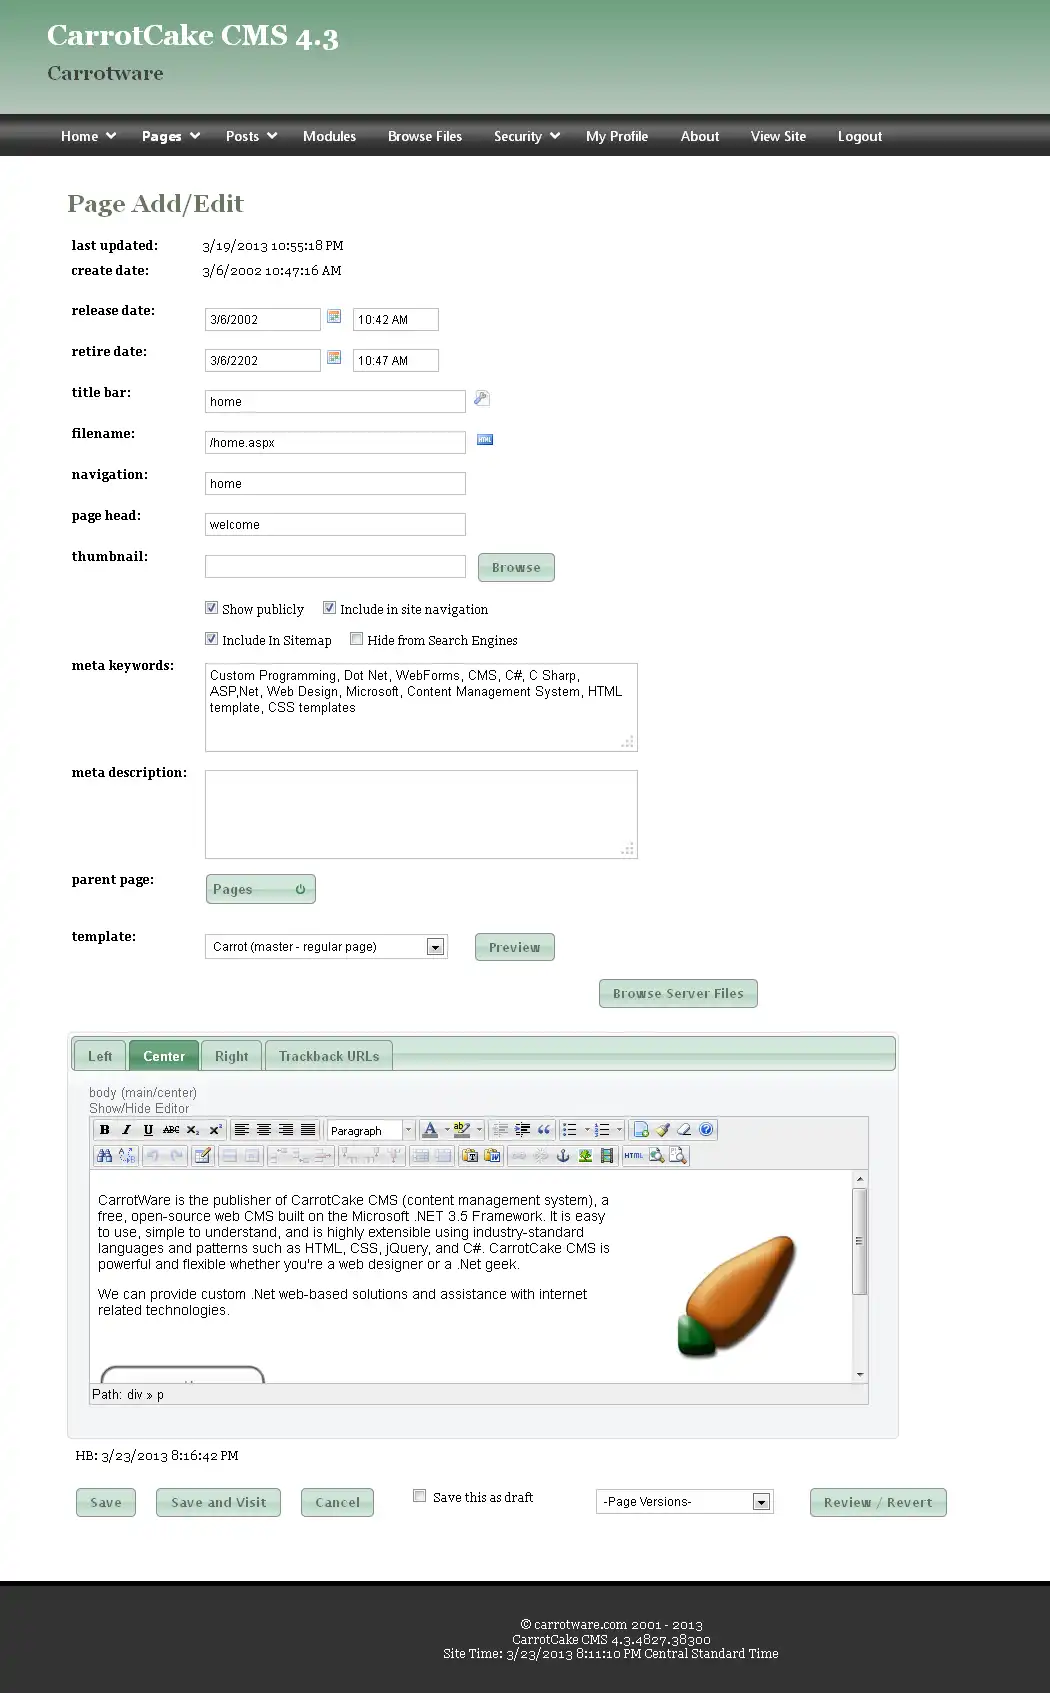 Загрузите веб-инструмент или веб-приложение CarrotCakeCMS